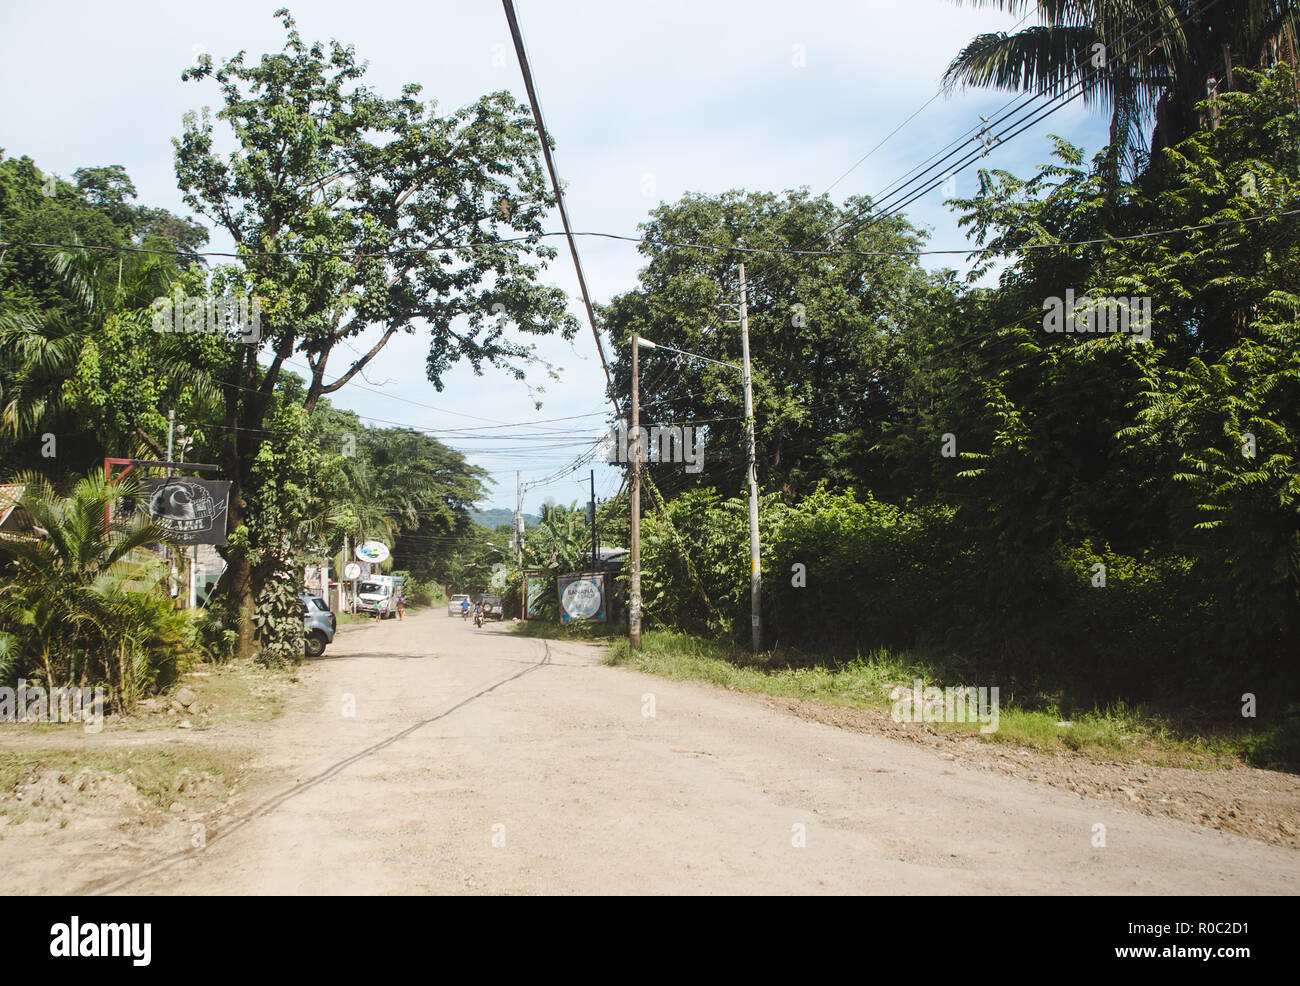 Polvorienta carretera principal a través de la pequeña ciudad de Santa Teresa, en la costa del pacífico de la península de Nicoya, Costa Rica Foto de stock